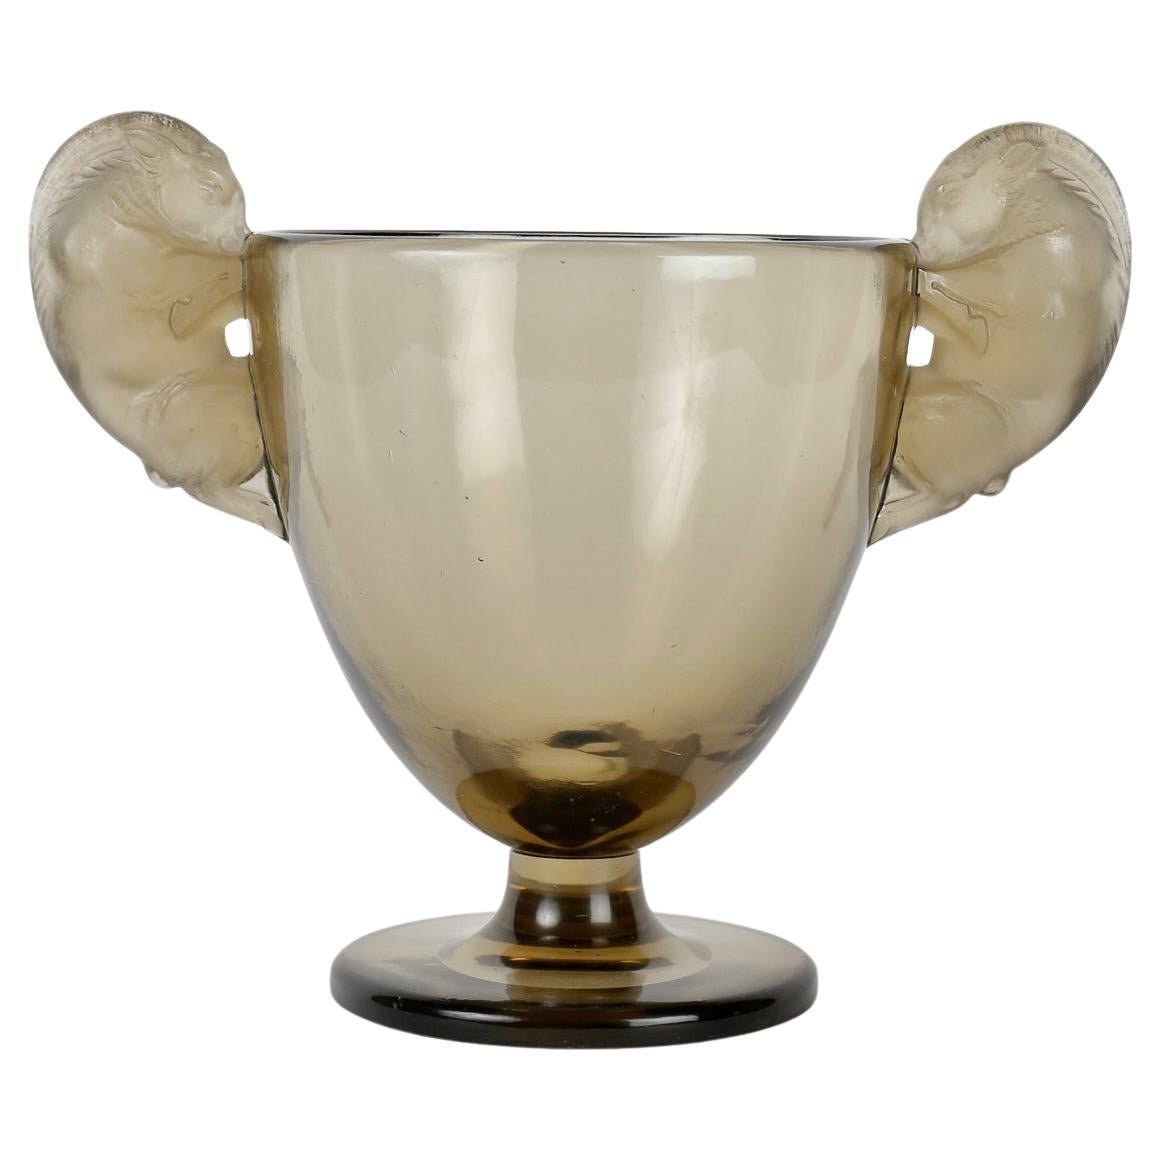 1925 Rene Lalique - Vase Beliers Vase Verre gris topaze fumé